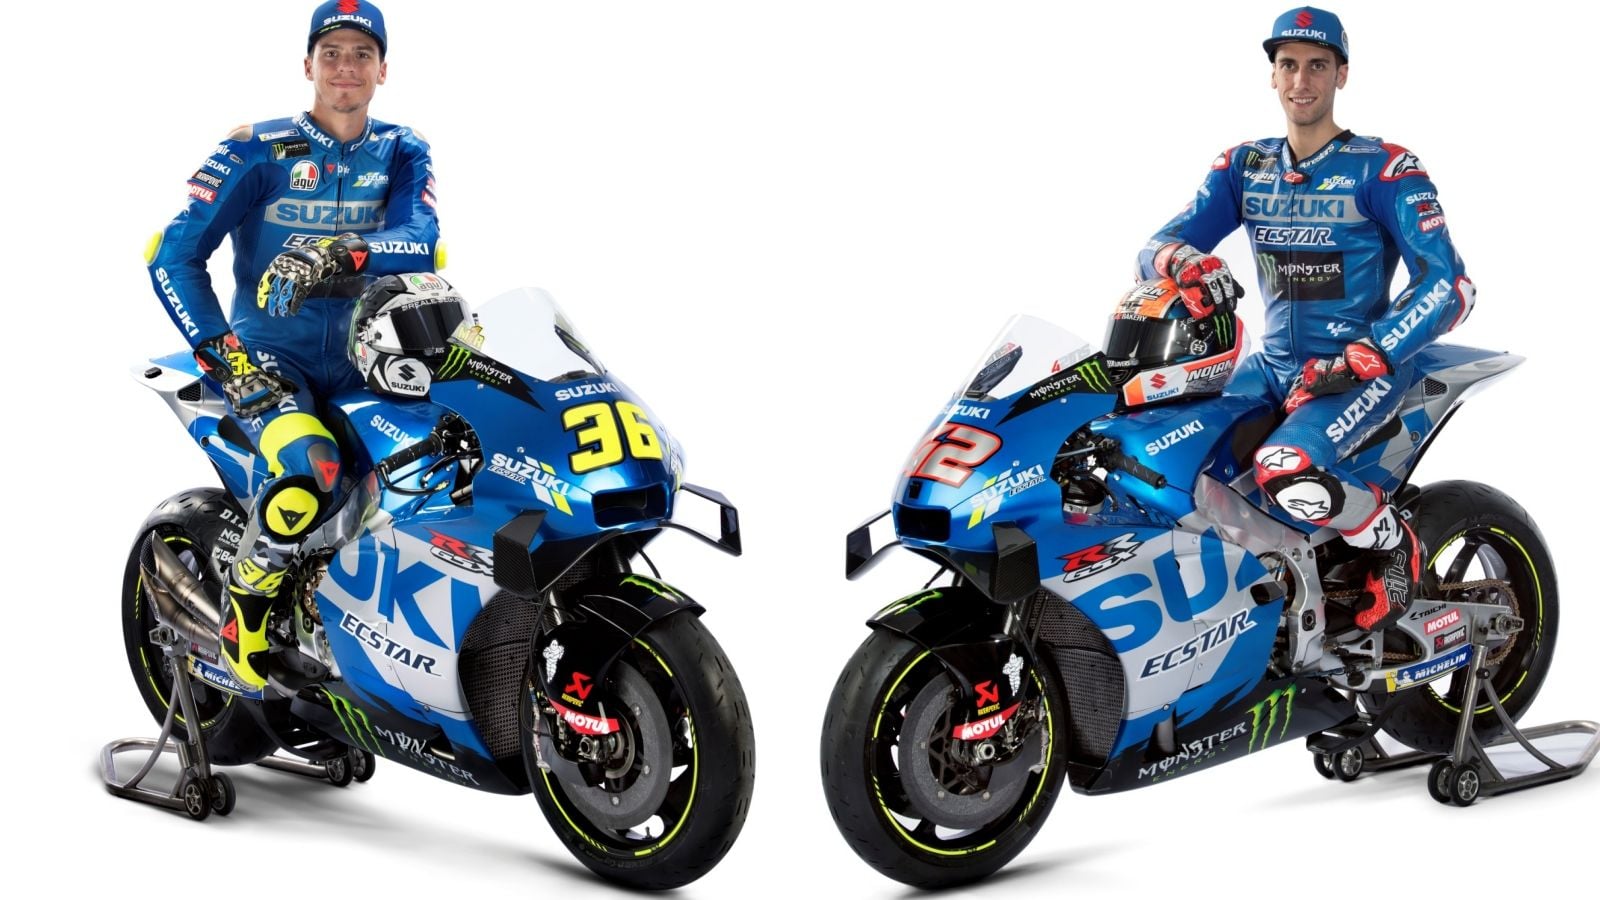 Suzuki detalha motos e pilotos do MotoGP 2021 - Revista Moto Adventure